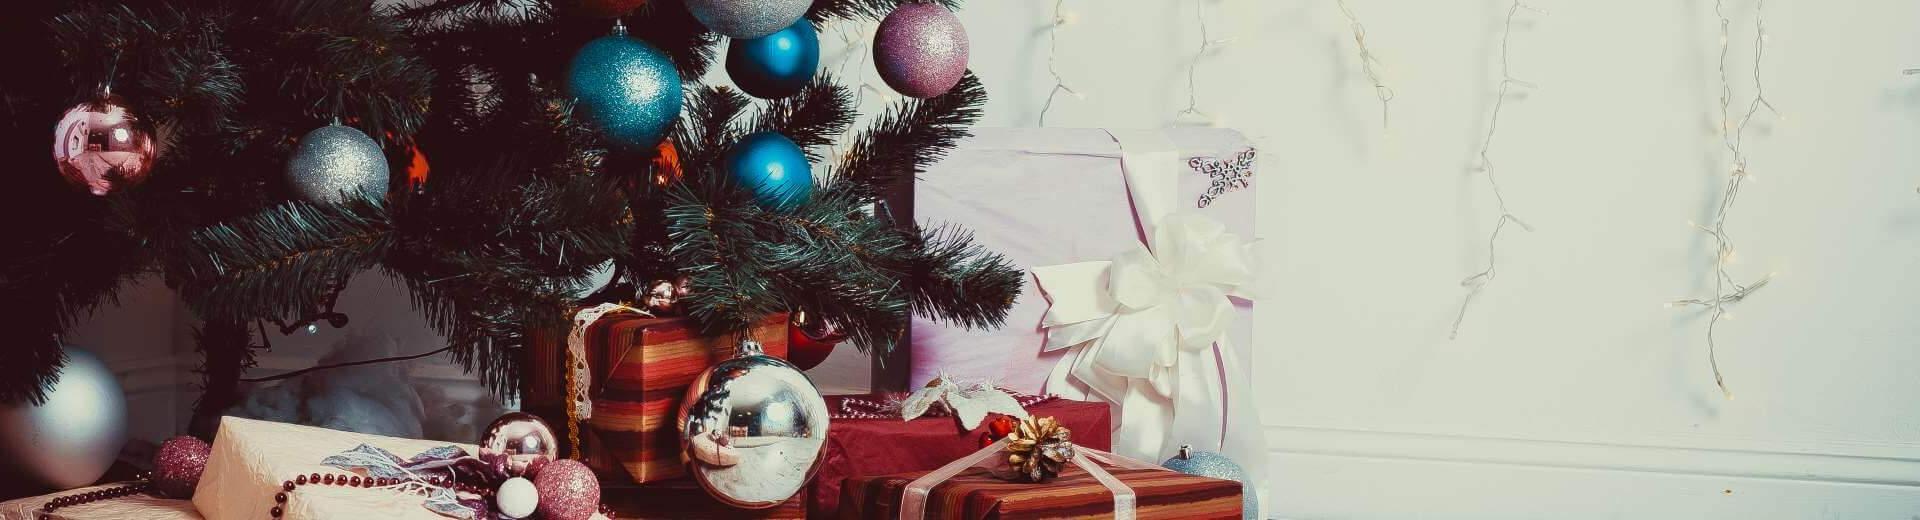 Vivez un Noël inoubliable dans une location de vacances en Espagne - Casamundo